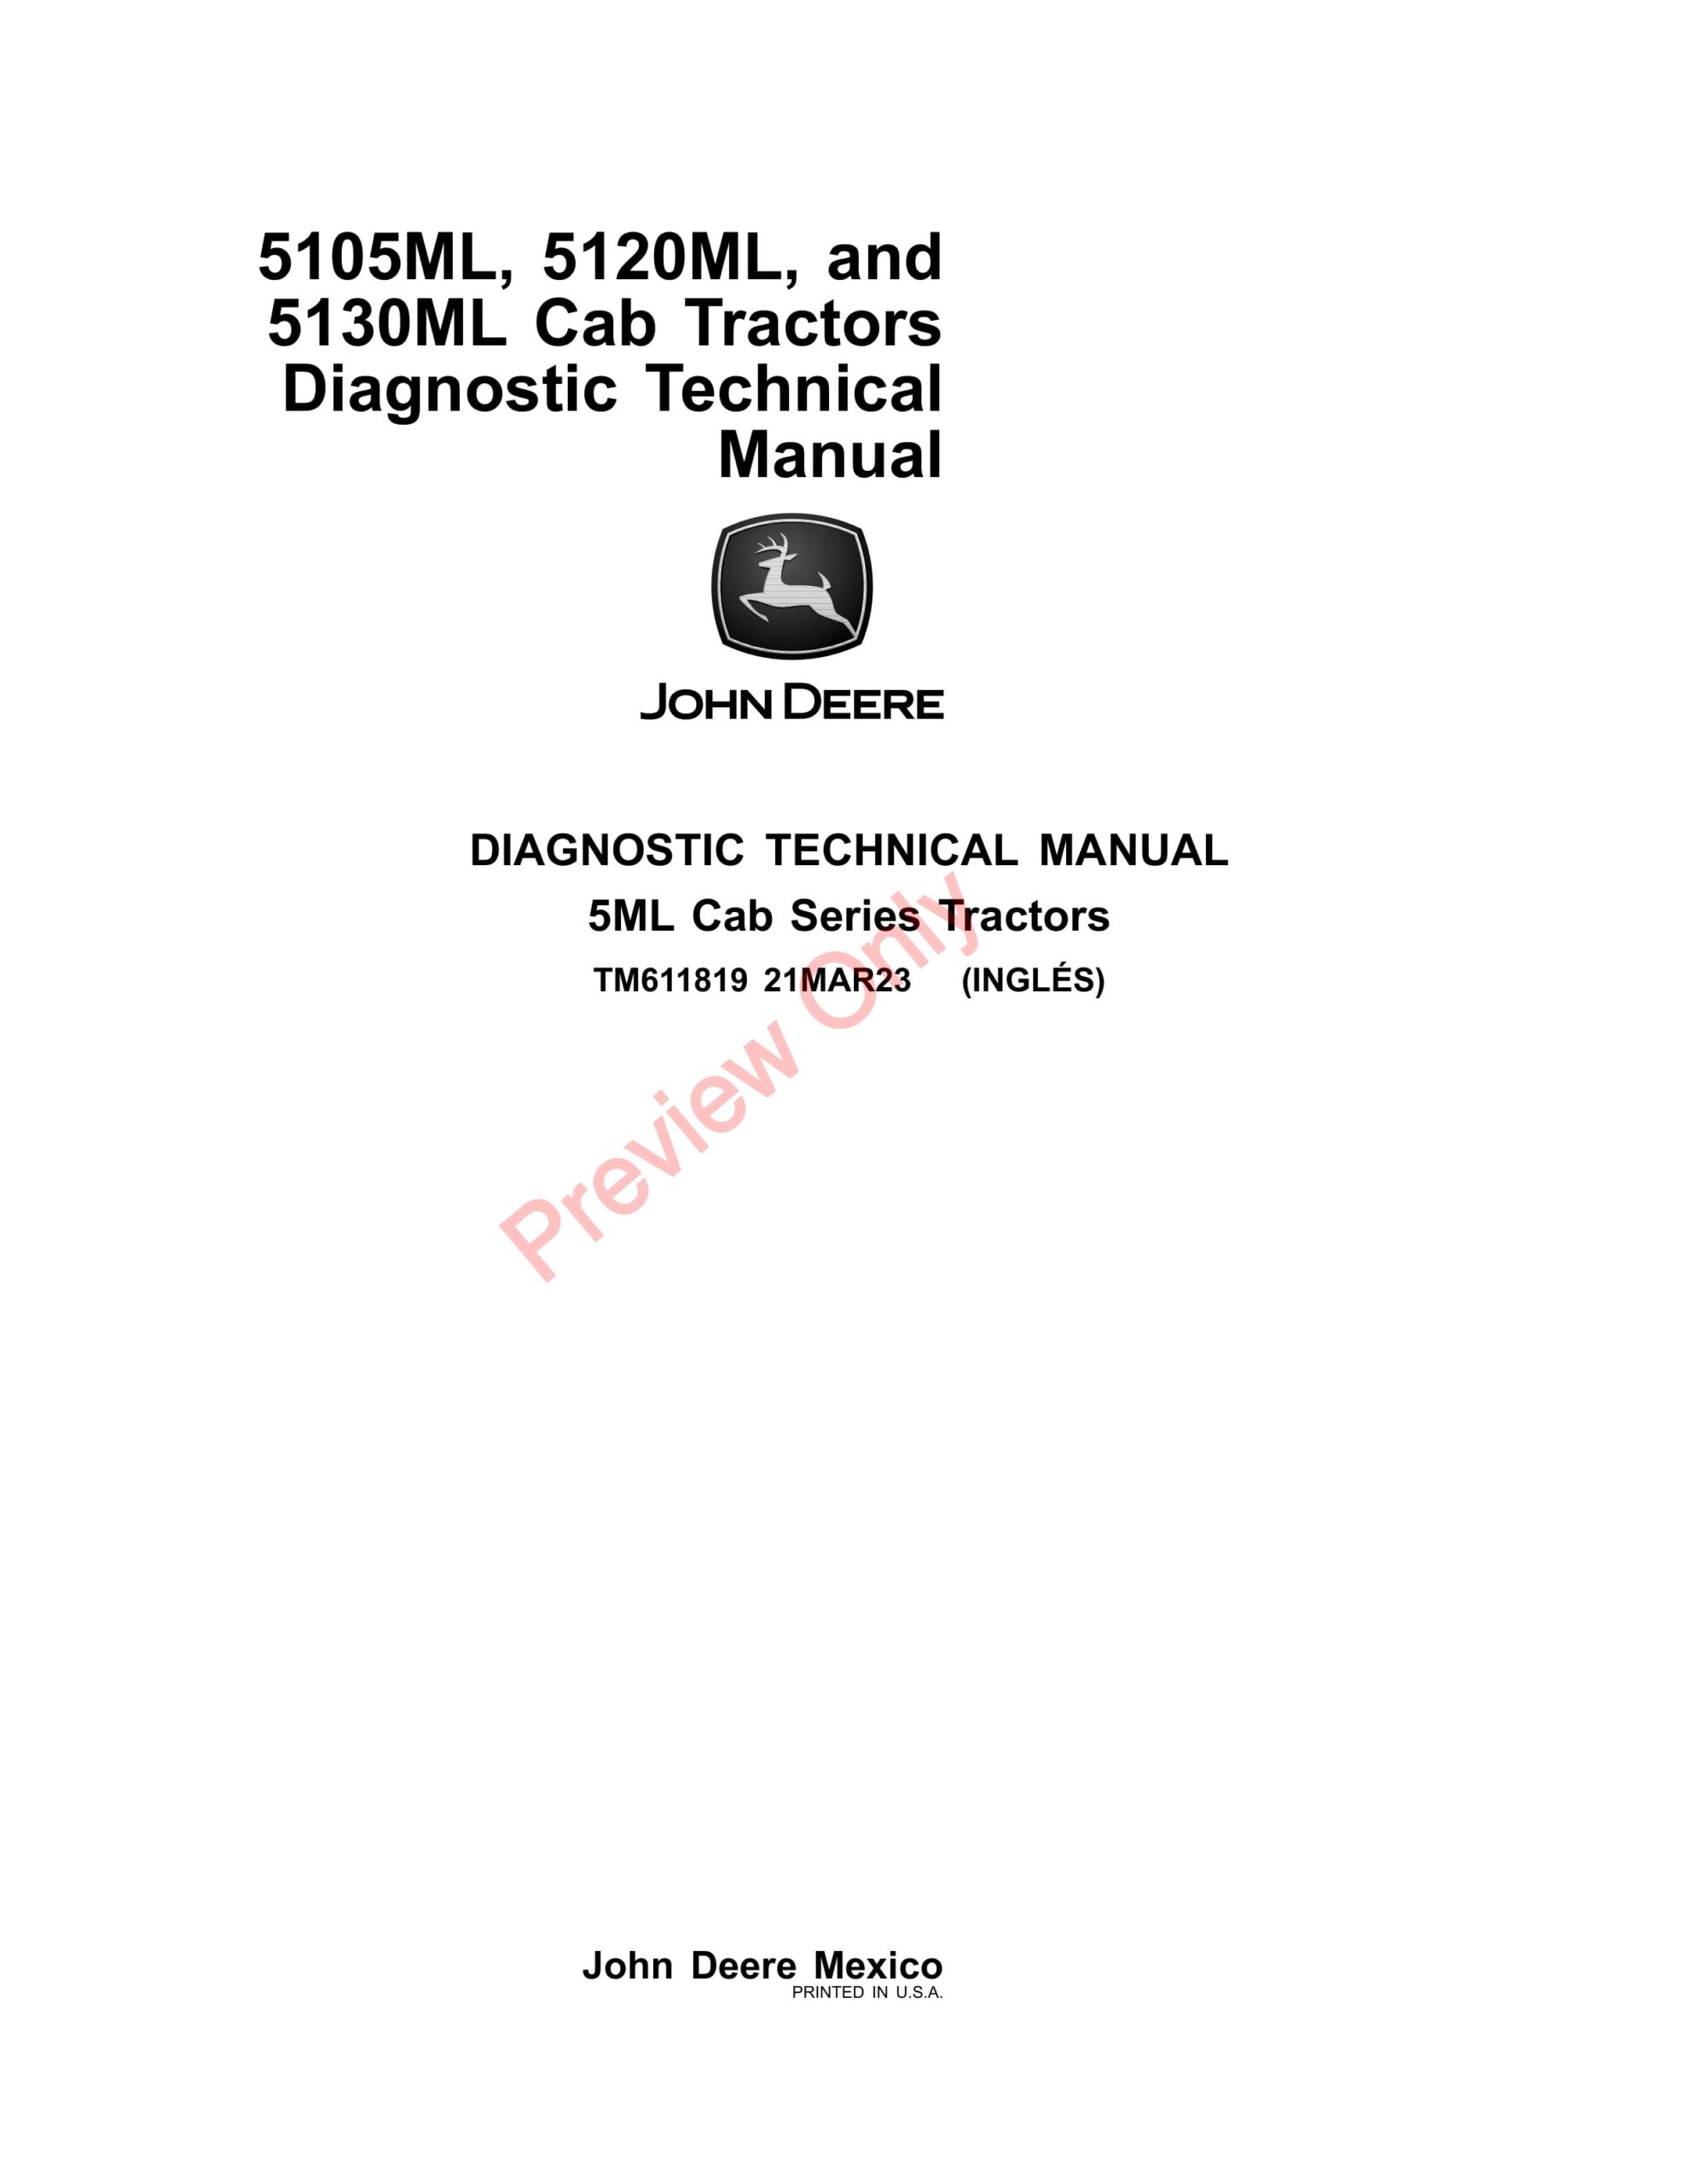 John Deere 5105ML, 5120ML, and 5130ML Cab Tractors Diagnostic Technical Manual TM611819 21MAR23-1